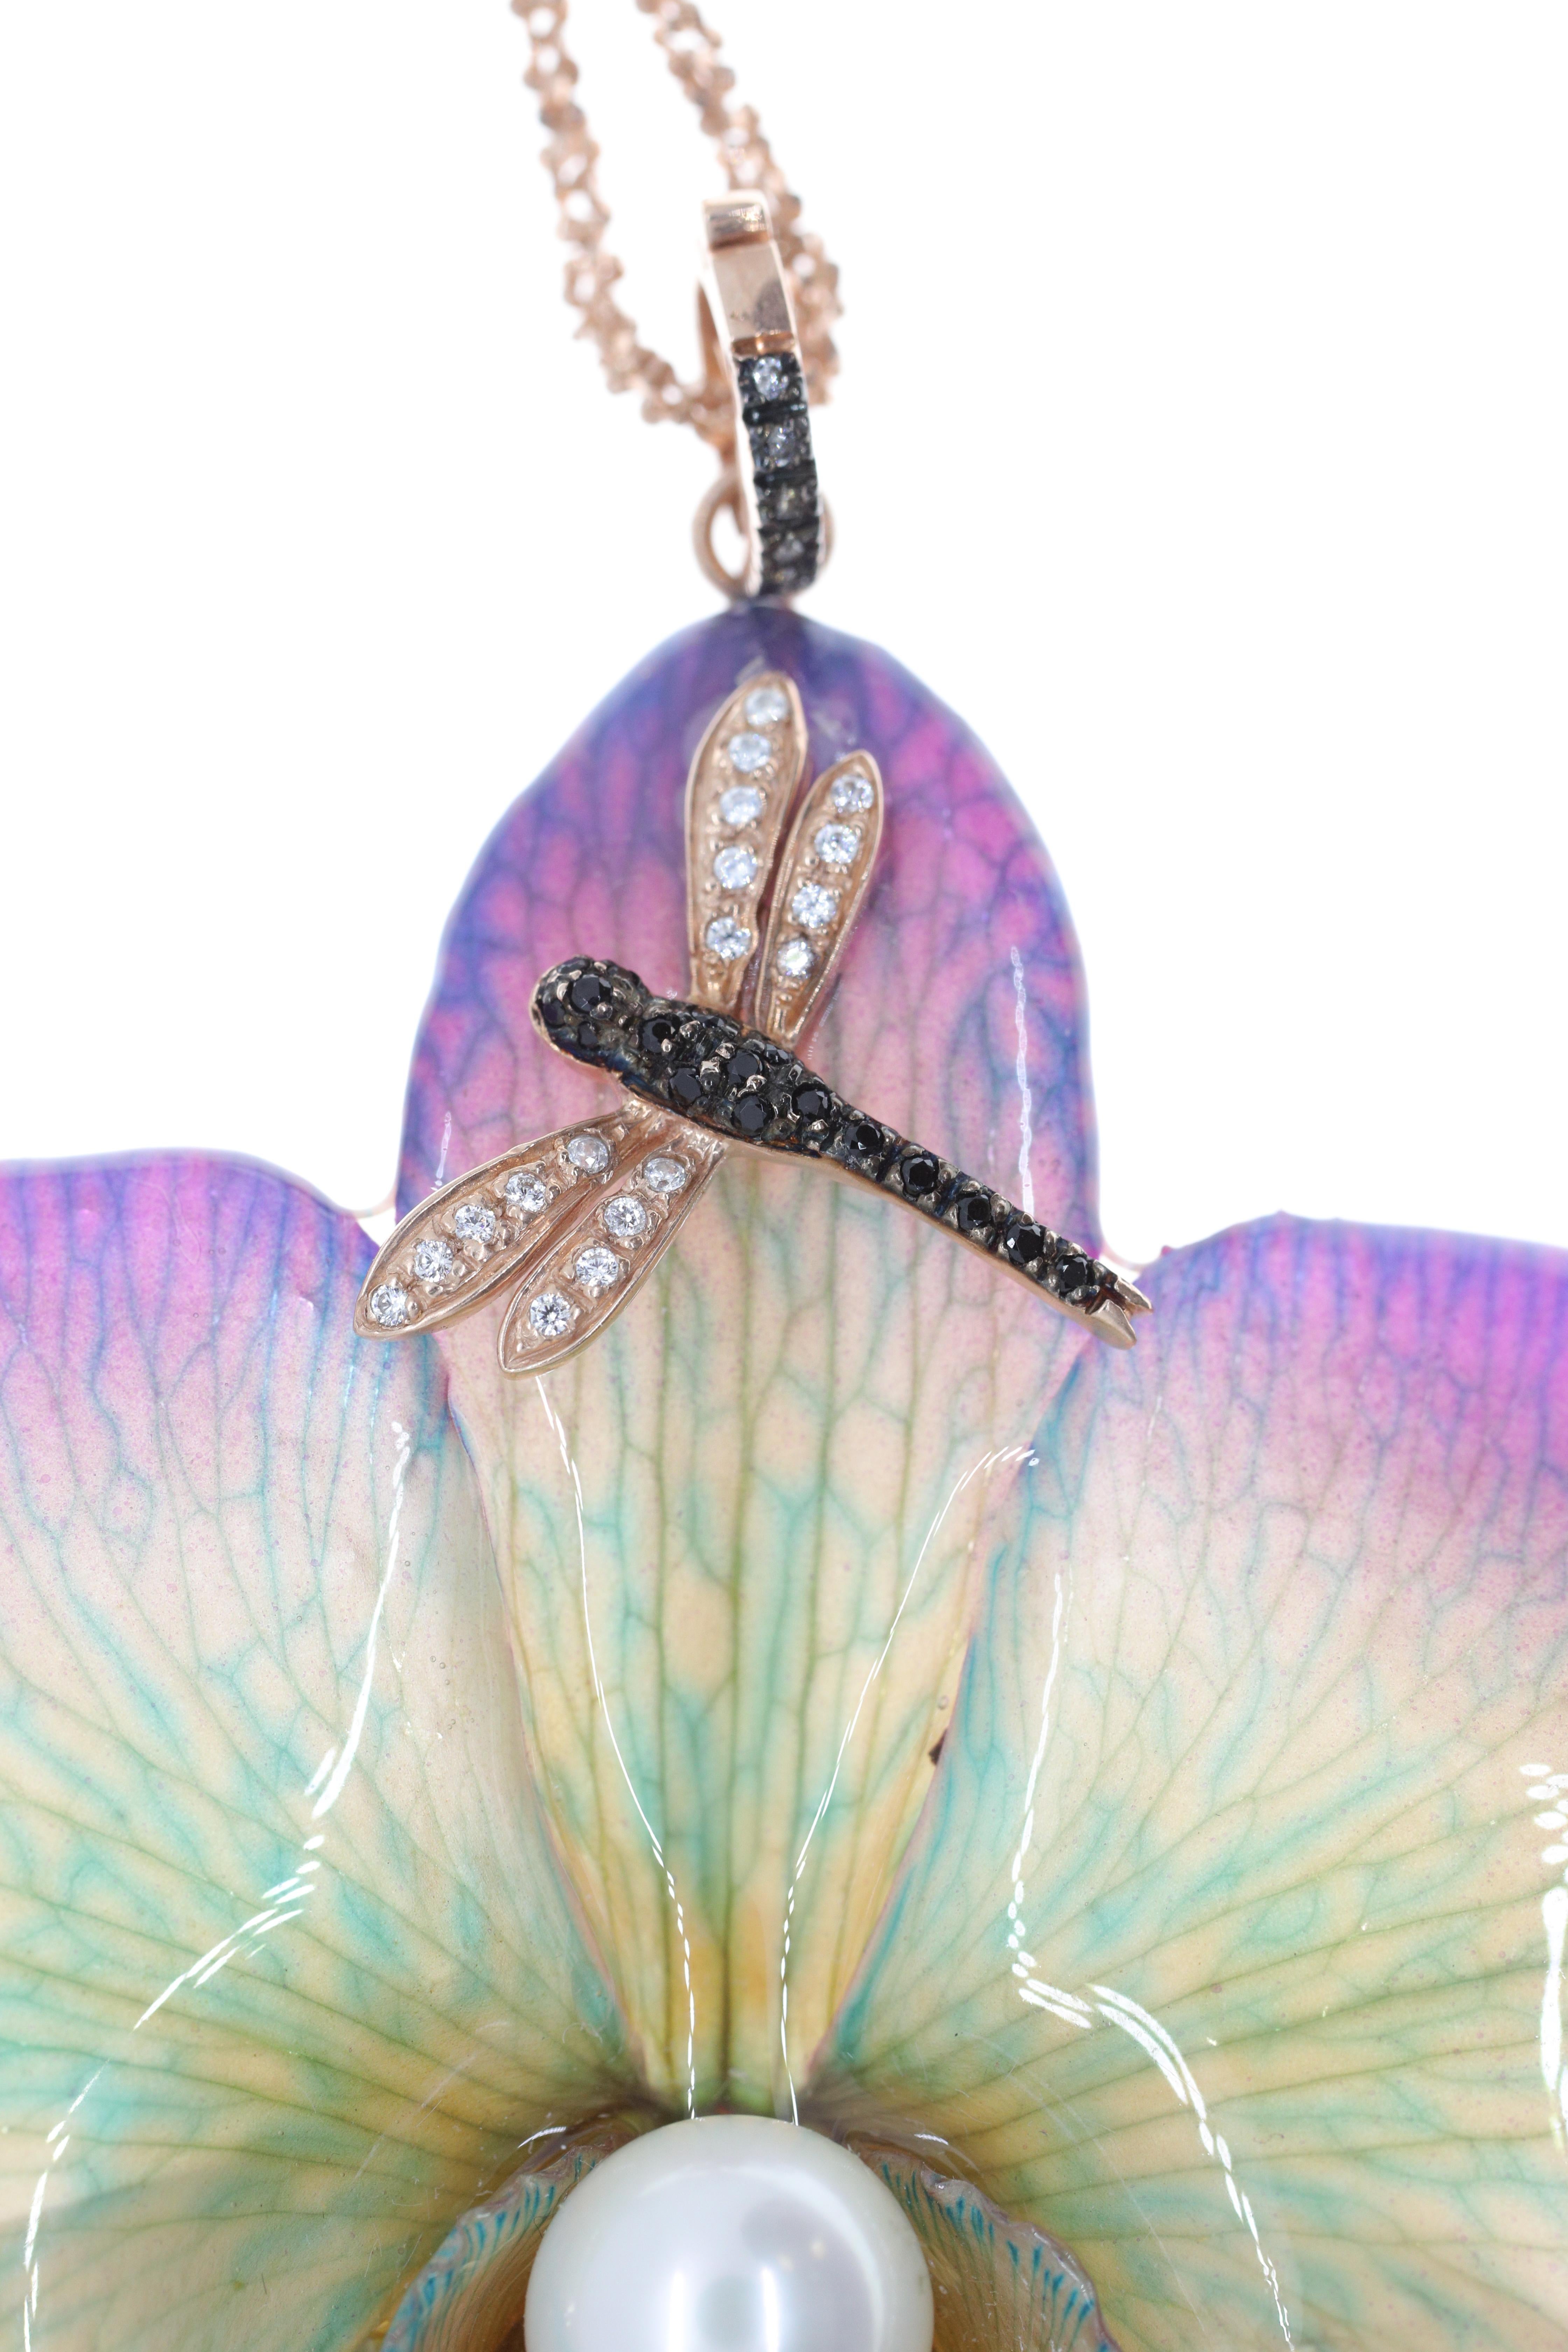 Mi-bijou, mi-objet d'art, ce pendentif a été inspiré et réalisé directement à partir de l'éclat et des merveilles du monde naturel. Une grande fleur d'orchidée véritable, cristallisée à son moment le plus glorieux pour l'éternité, accueille une